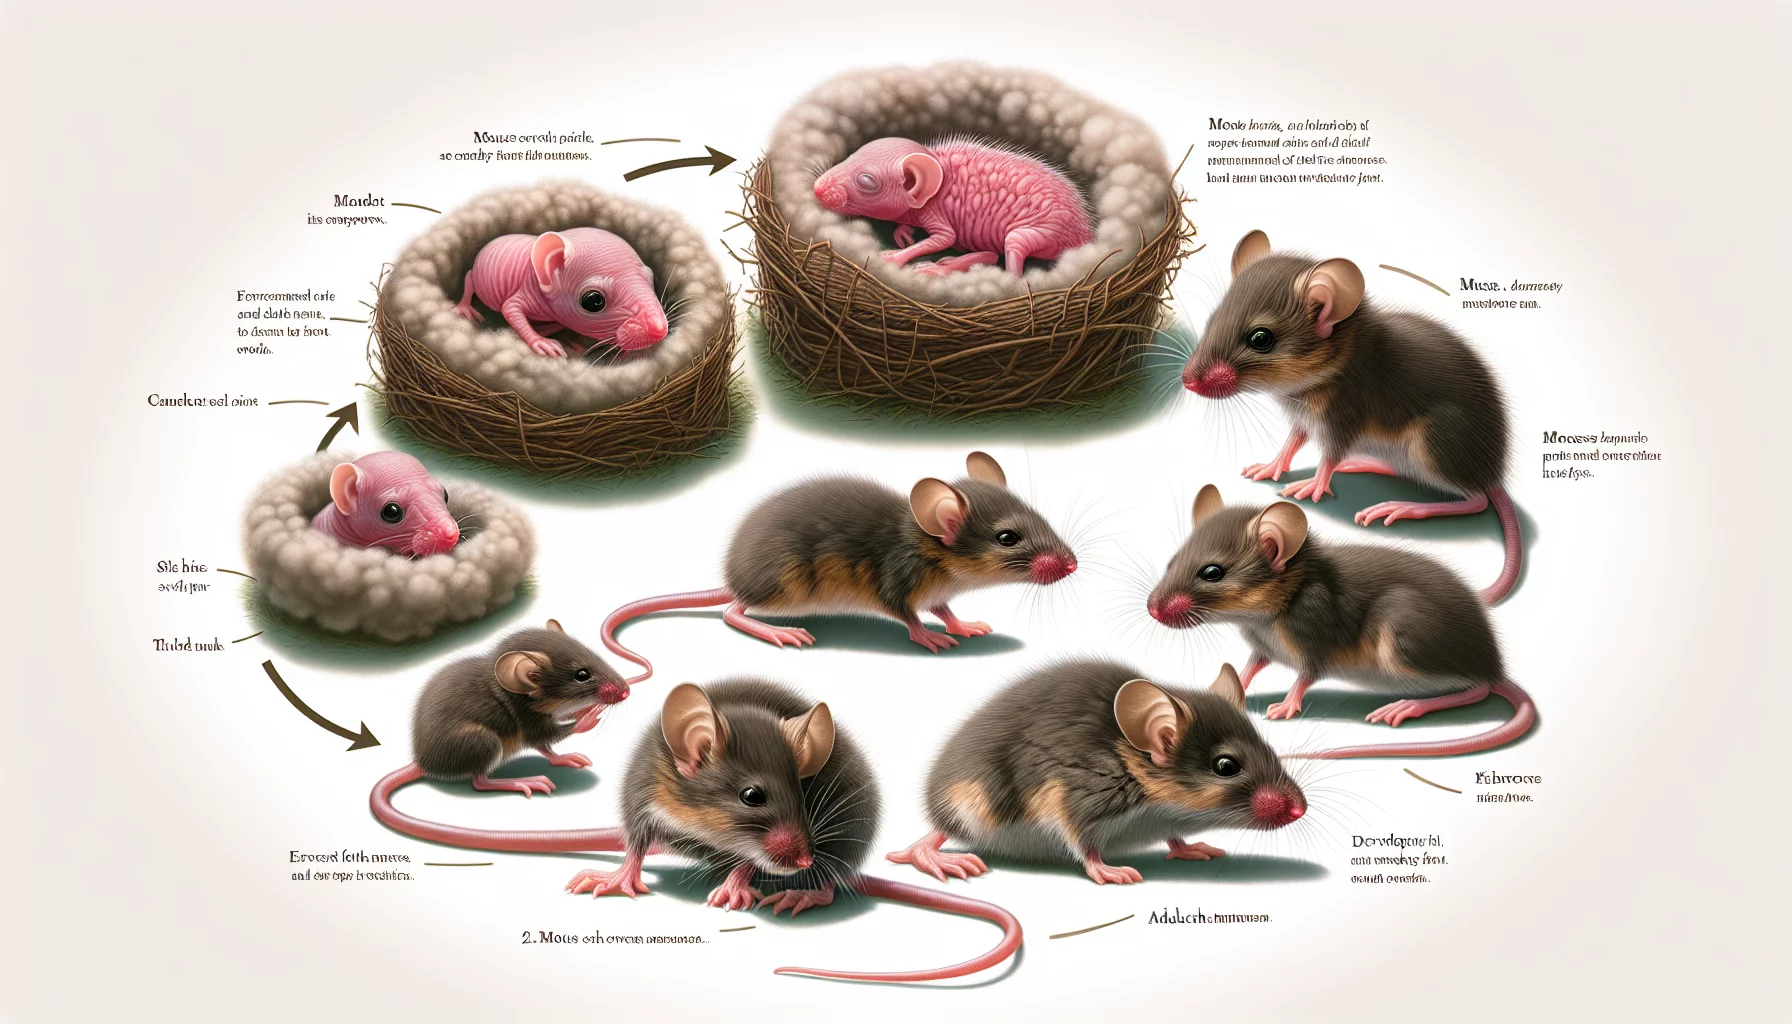 Cycle de vie d'une souris : De la naissance à l'âge adulte
